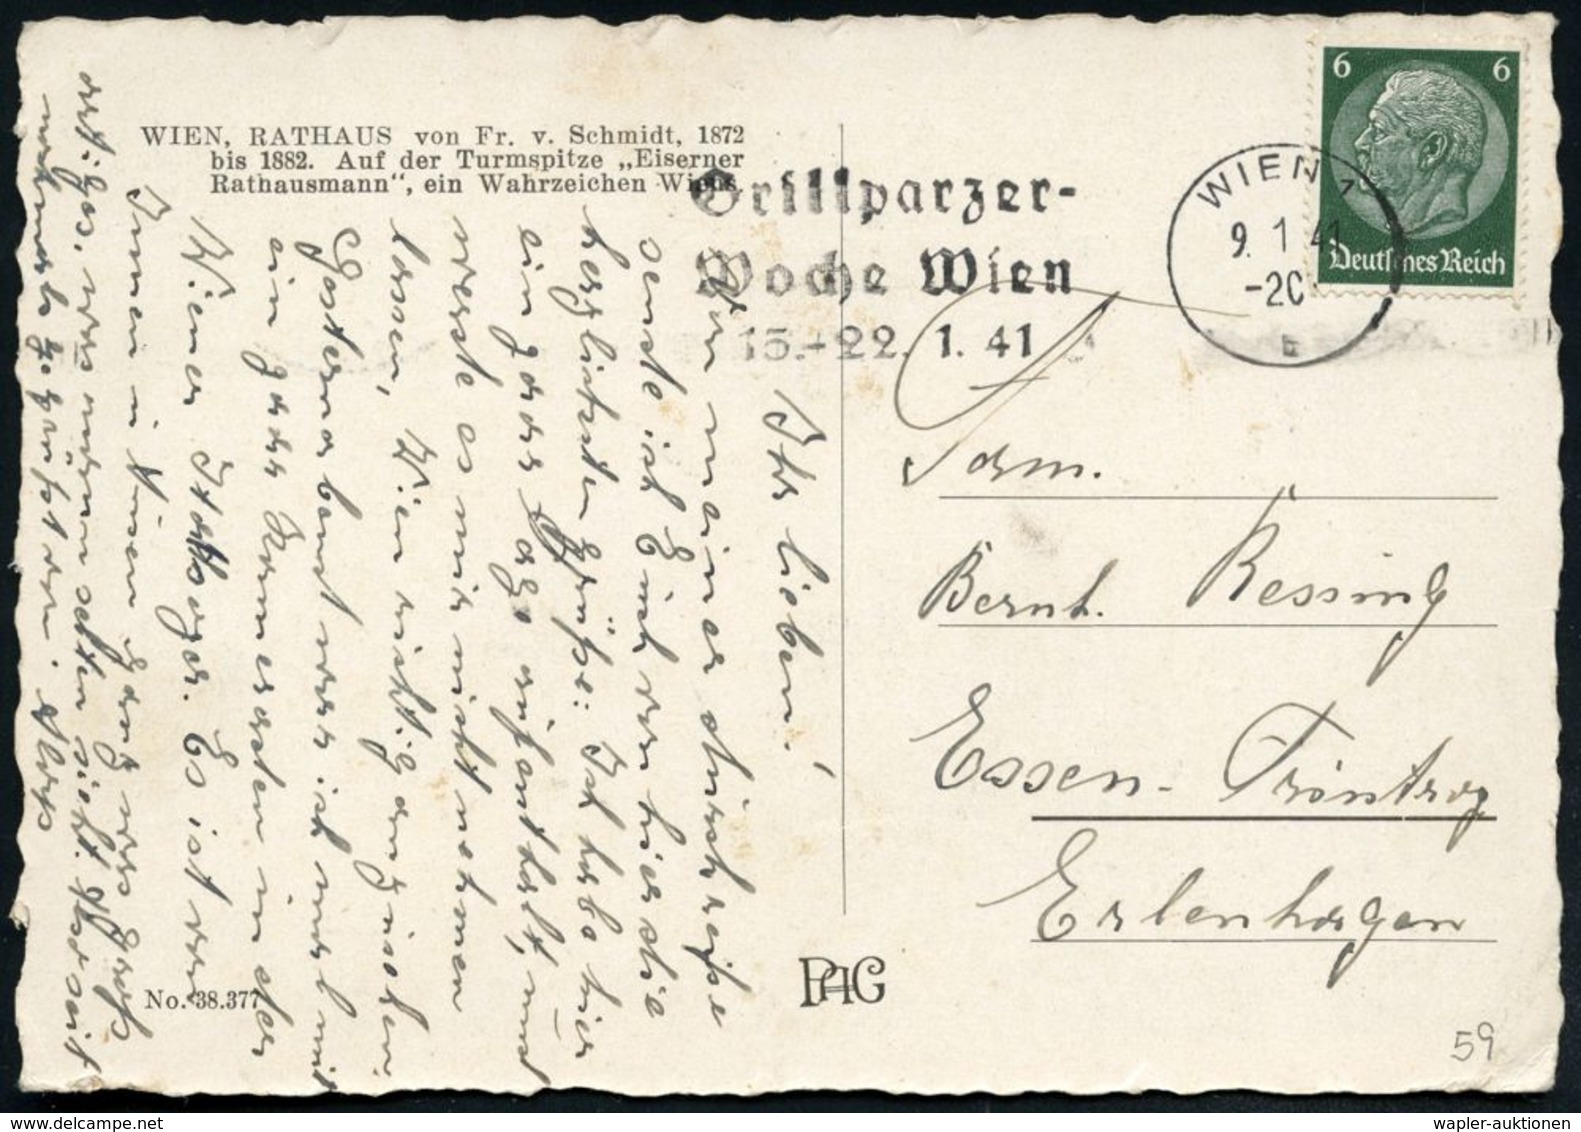 DEUTSCHSPRACHIGE DICHTER & LITERATUR : WIEN 1/ B/ Grillparzer-Woche Wien/ 15.-22.1.41 1941 (Jan.) MWSt Klar Auf Inl.-Kt  - Ecrivains